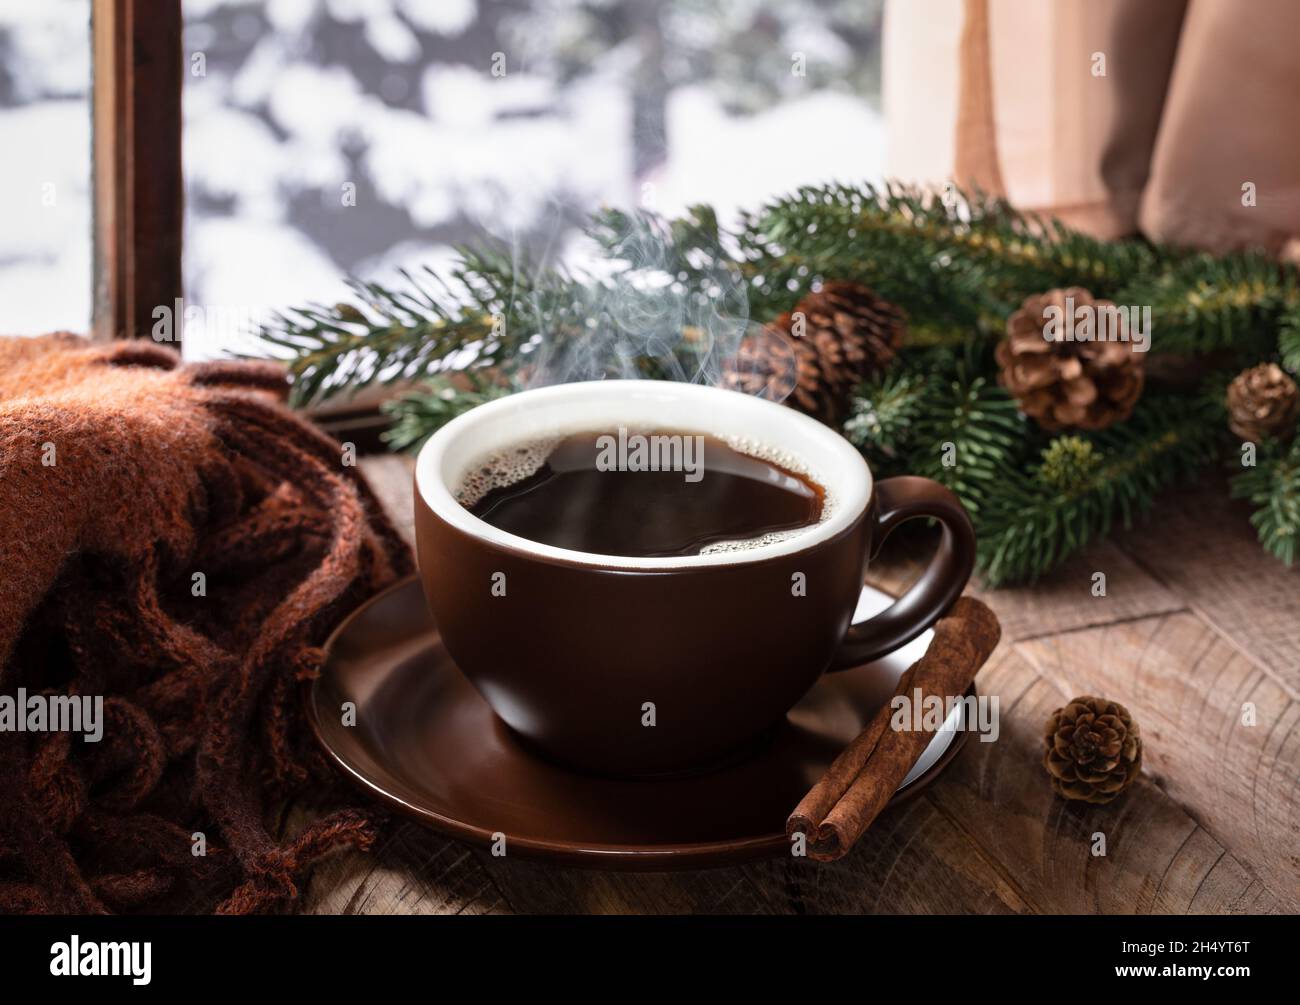 Dampfende heiße Tasse Kaffee auf einem rustikalen Holztisch an einem Fenster mit winterlichem Hintergrund im Freien Stockfoto